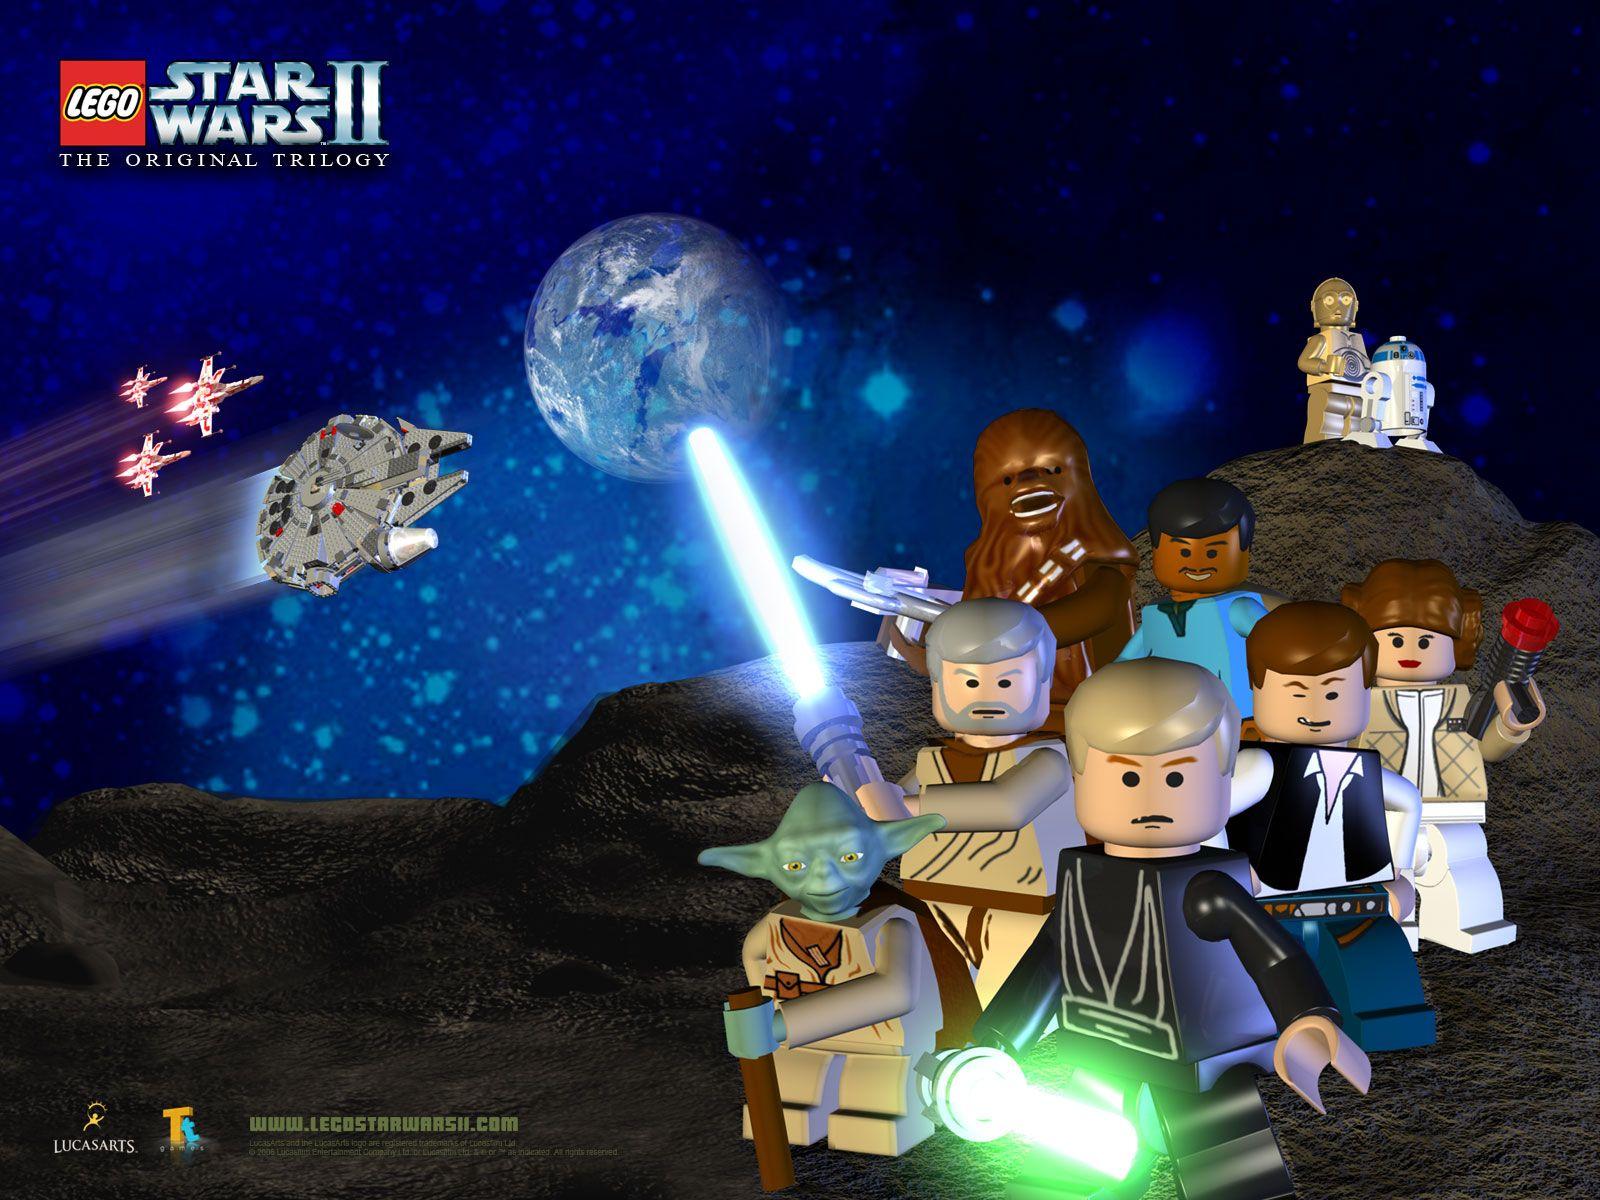 Lego Star Wars Photo, High Definition, High Quality